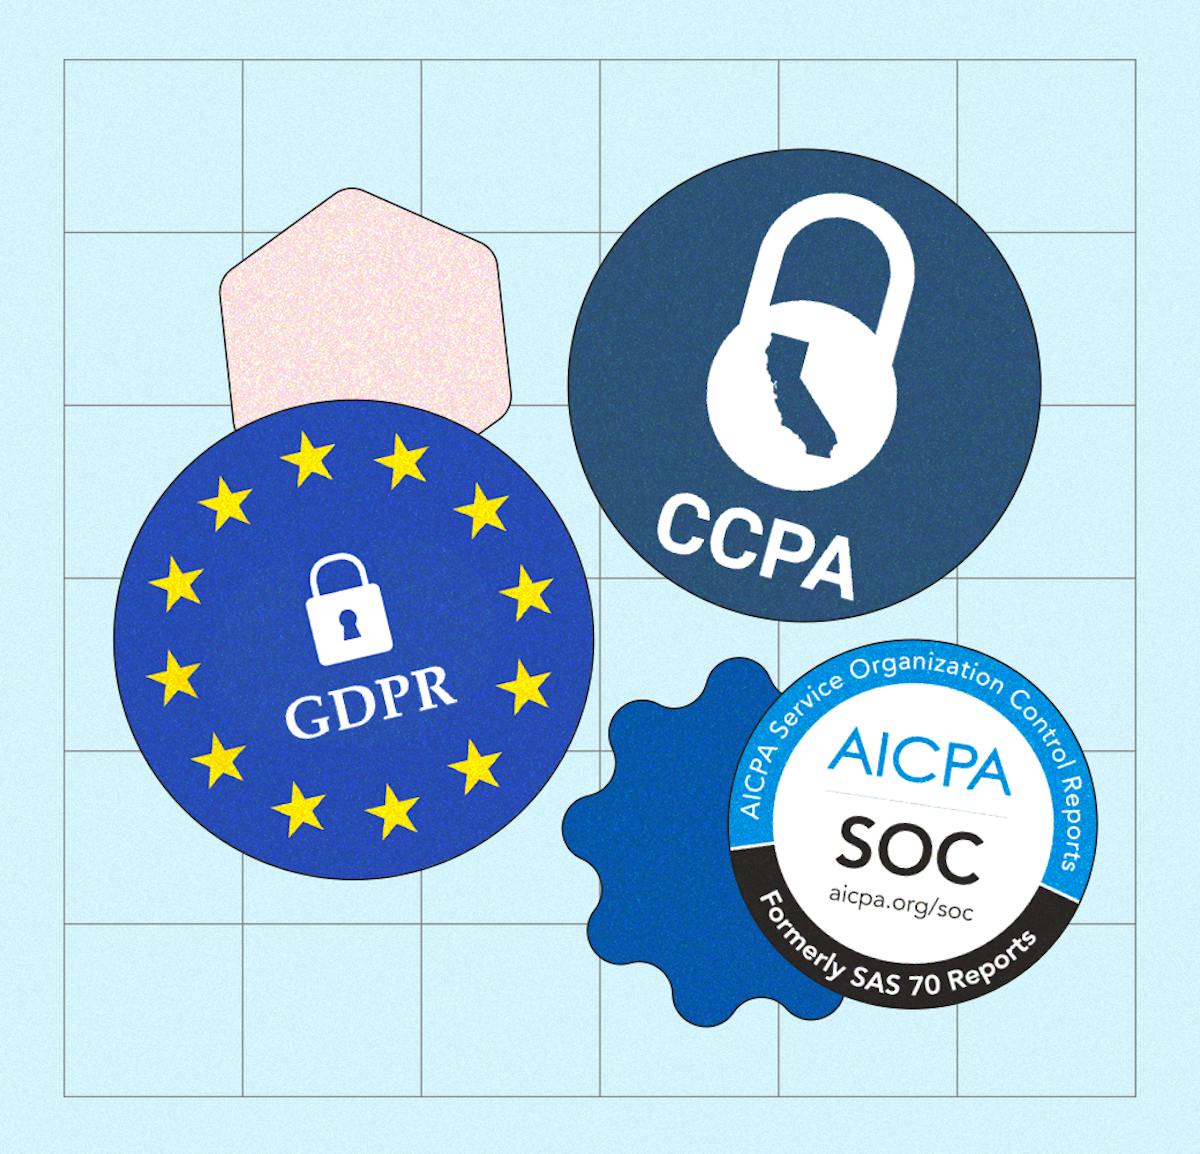 GDPR, CCPA and AICPA SOC Logos